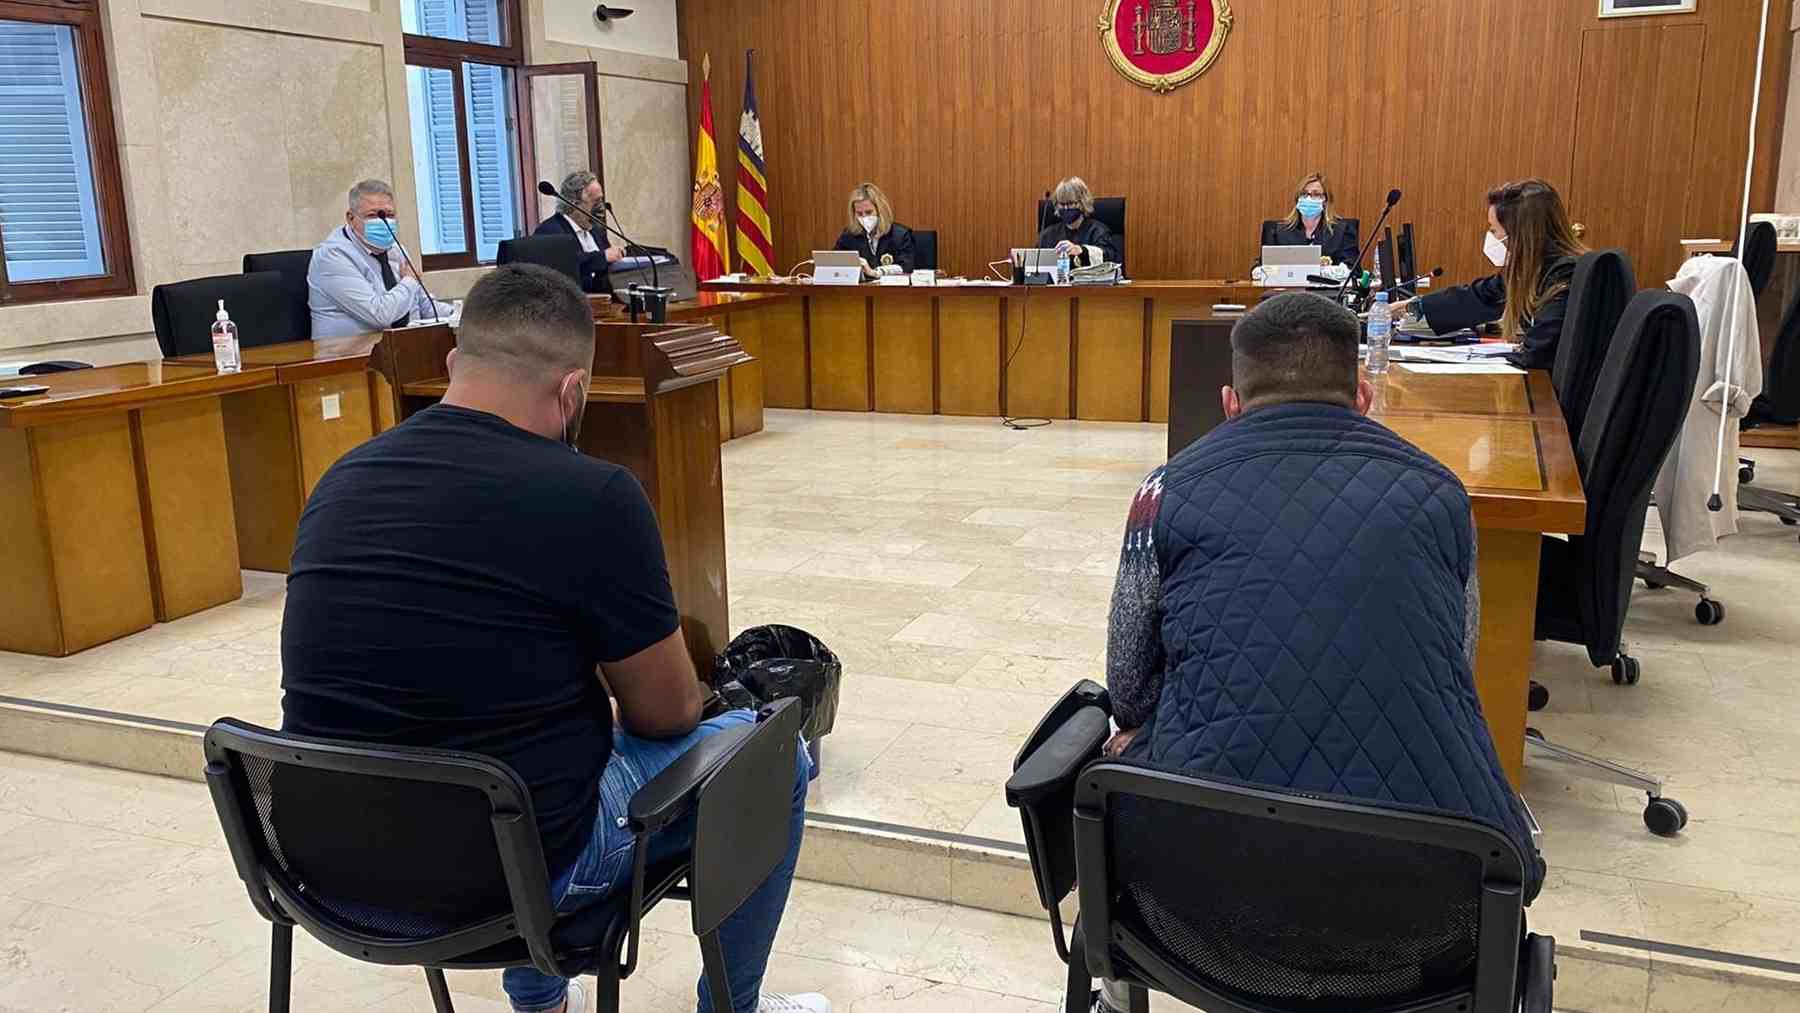 Juicio en la Audiencia Provincial de Baleares por una supuesta violación grupal en Mallorca. Foto: Europa Press